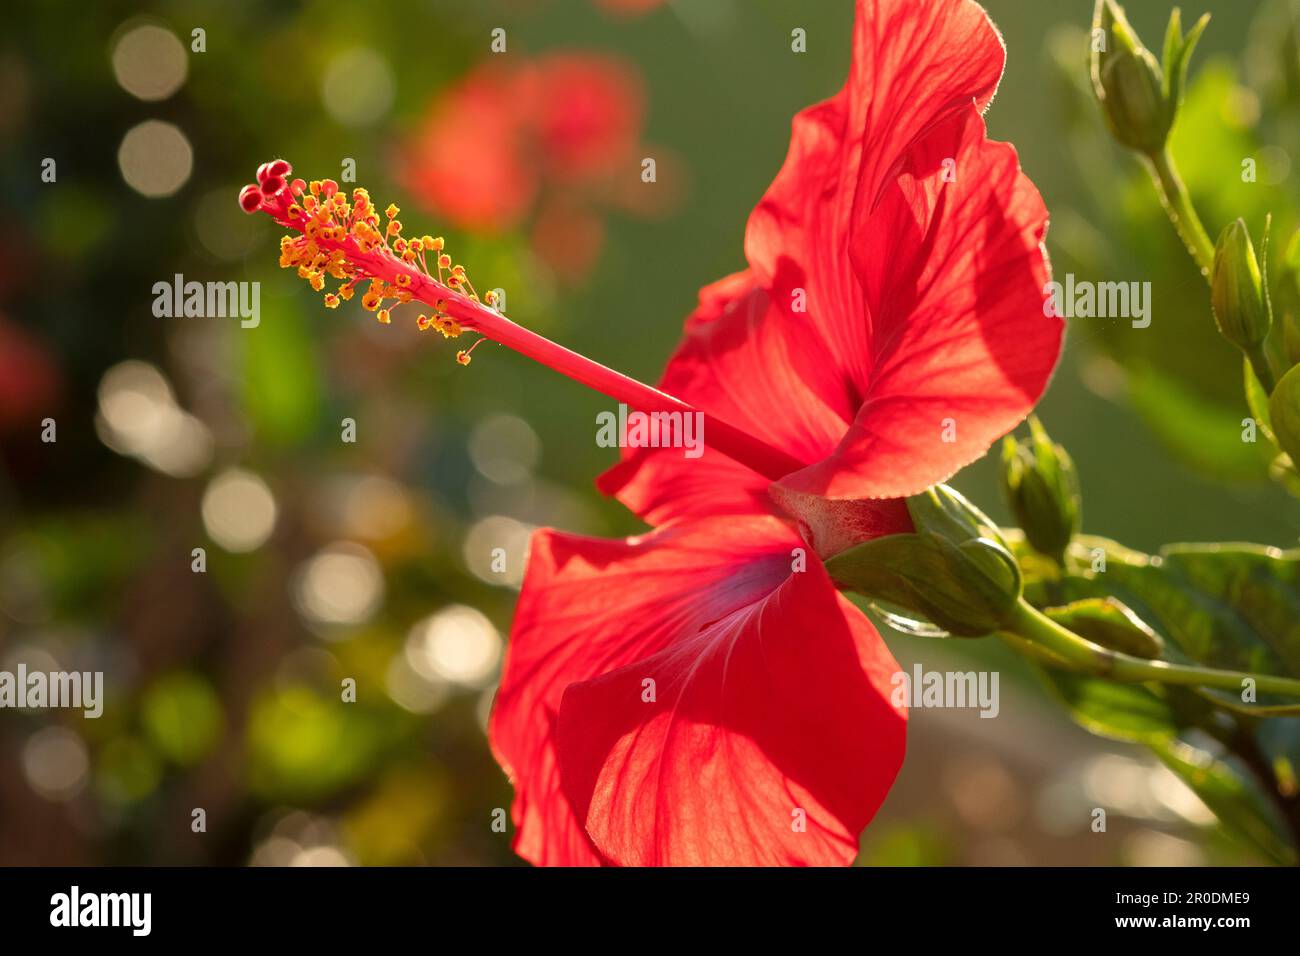 Eine rote Hibiscus rosa sinensis, eine in tropischen und subtropischen Gebieten weit verbreitete Zierpflanze. Nahaufnahme einer einzelnen Blume mit Hintergrundbeleuchtung Stockfoto